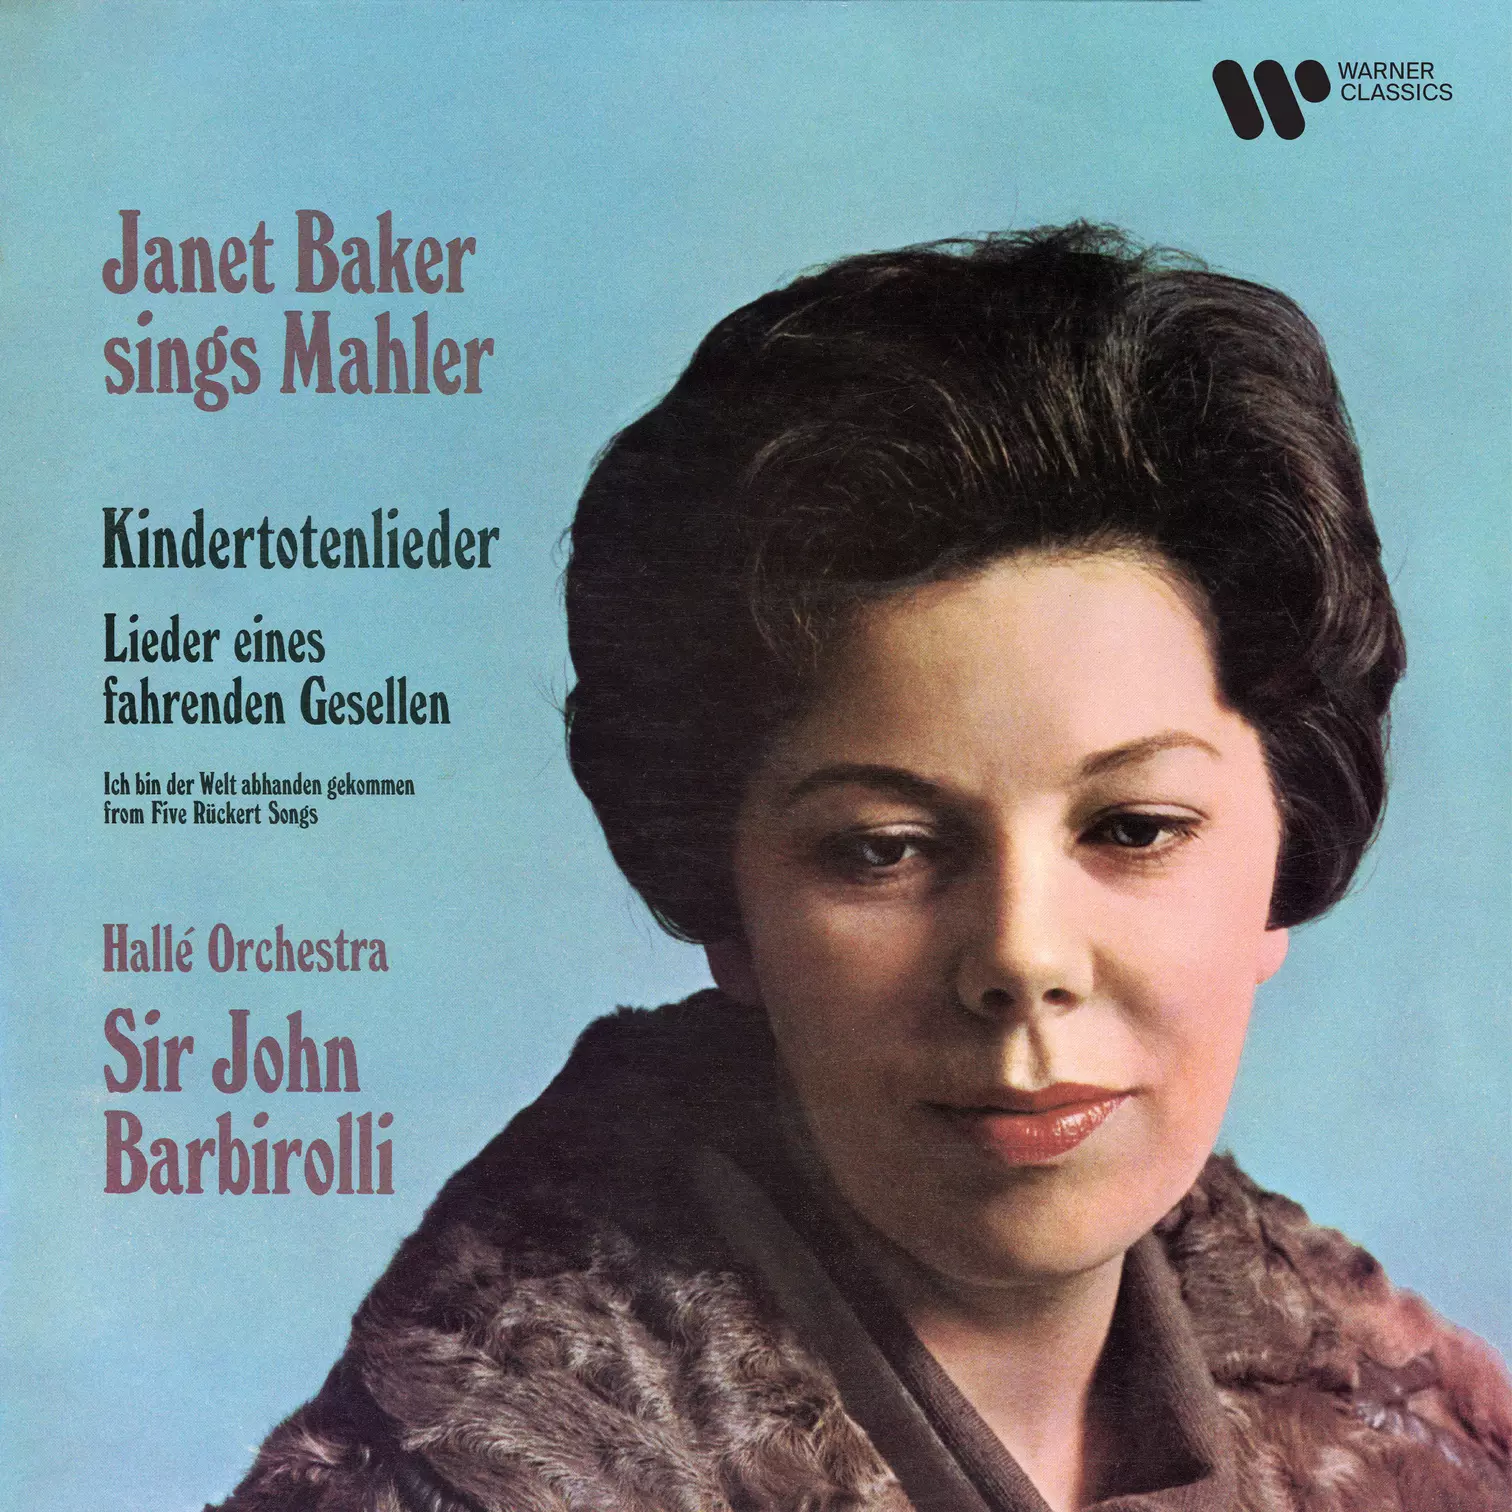 Mahler: Kindertotenlieder & Lieder eines fahrenden Gesellen